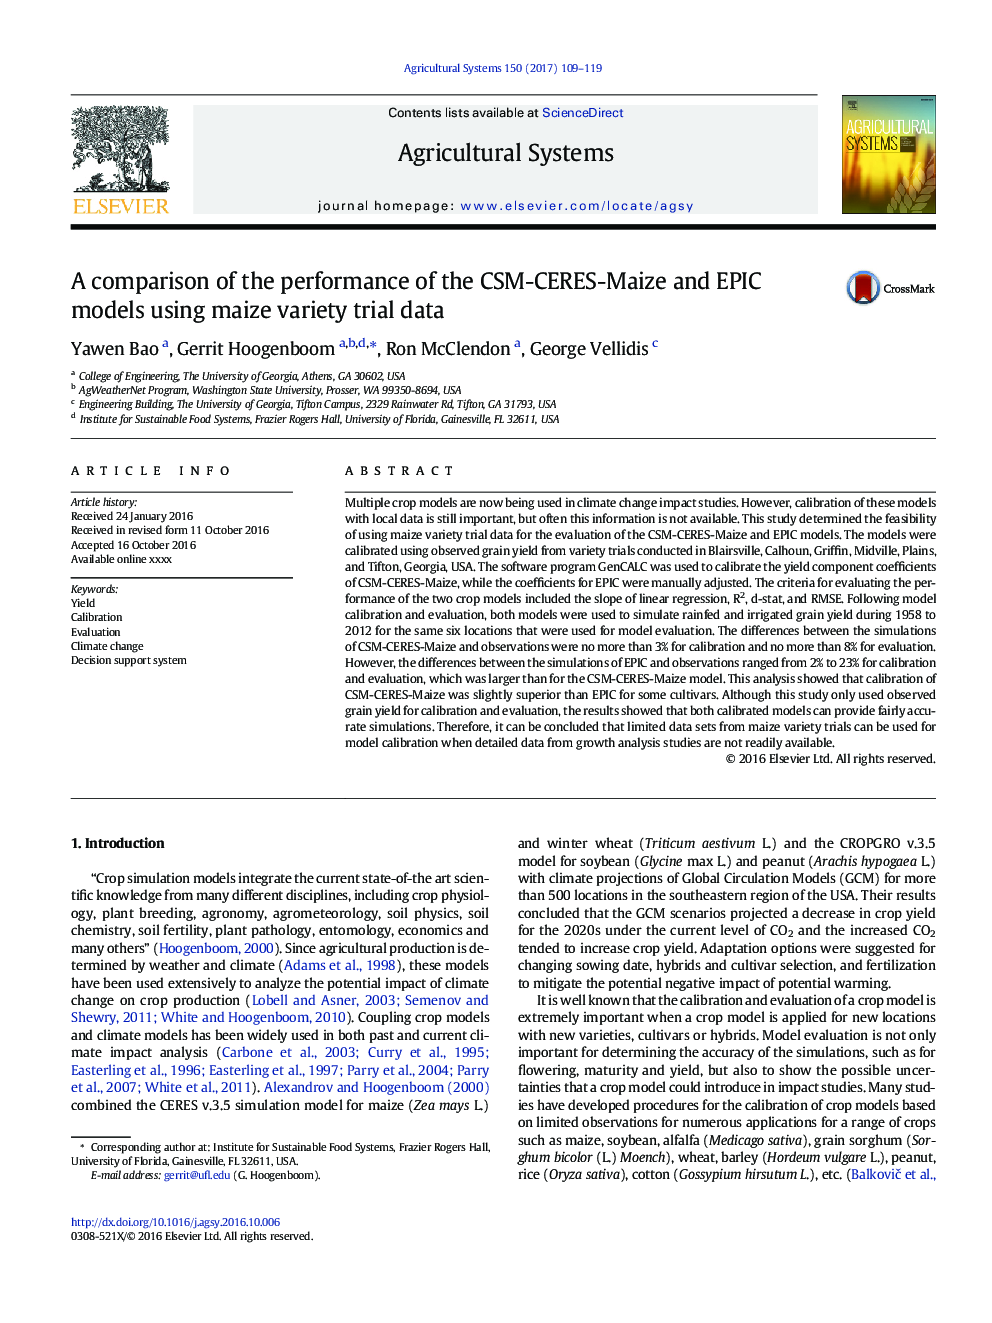 مقایسه عملکرد مدل های CSM-CERES ذرت و EPIC با استفاده از داده های آزمایش انواع ذرت